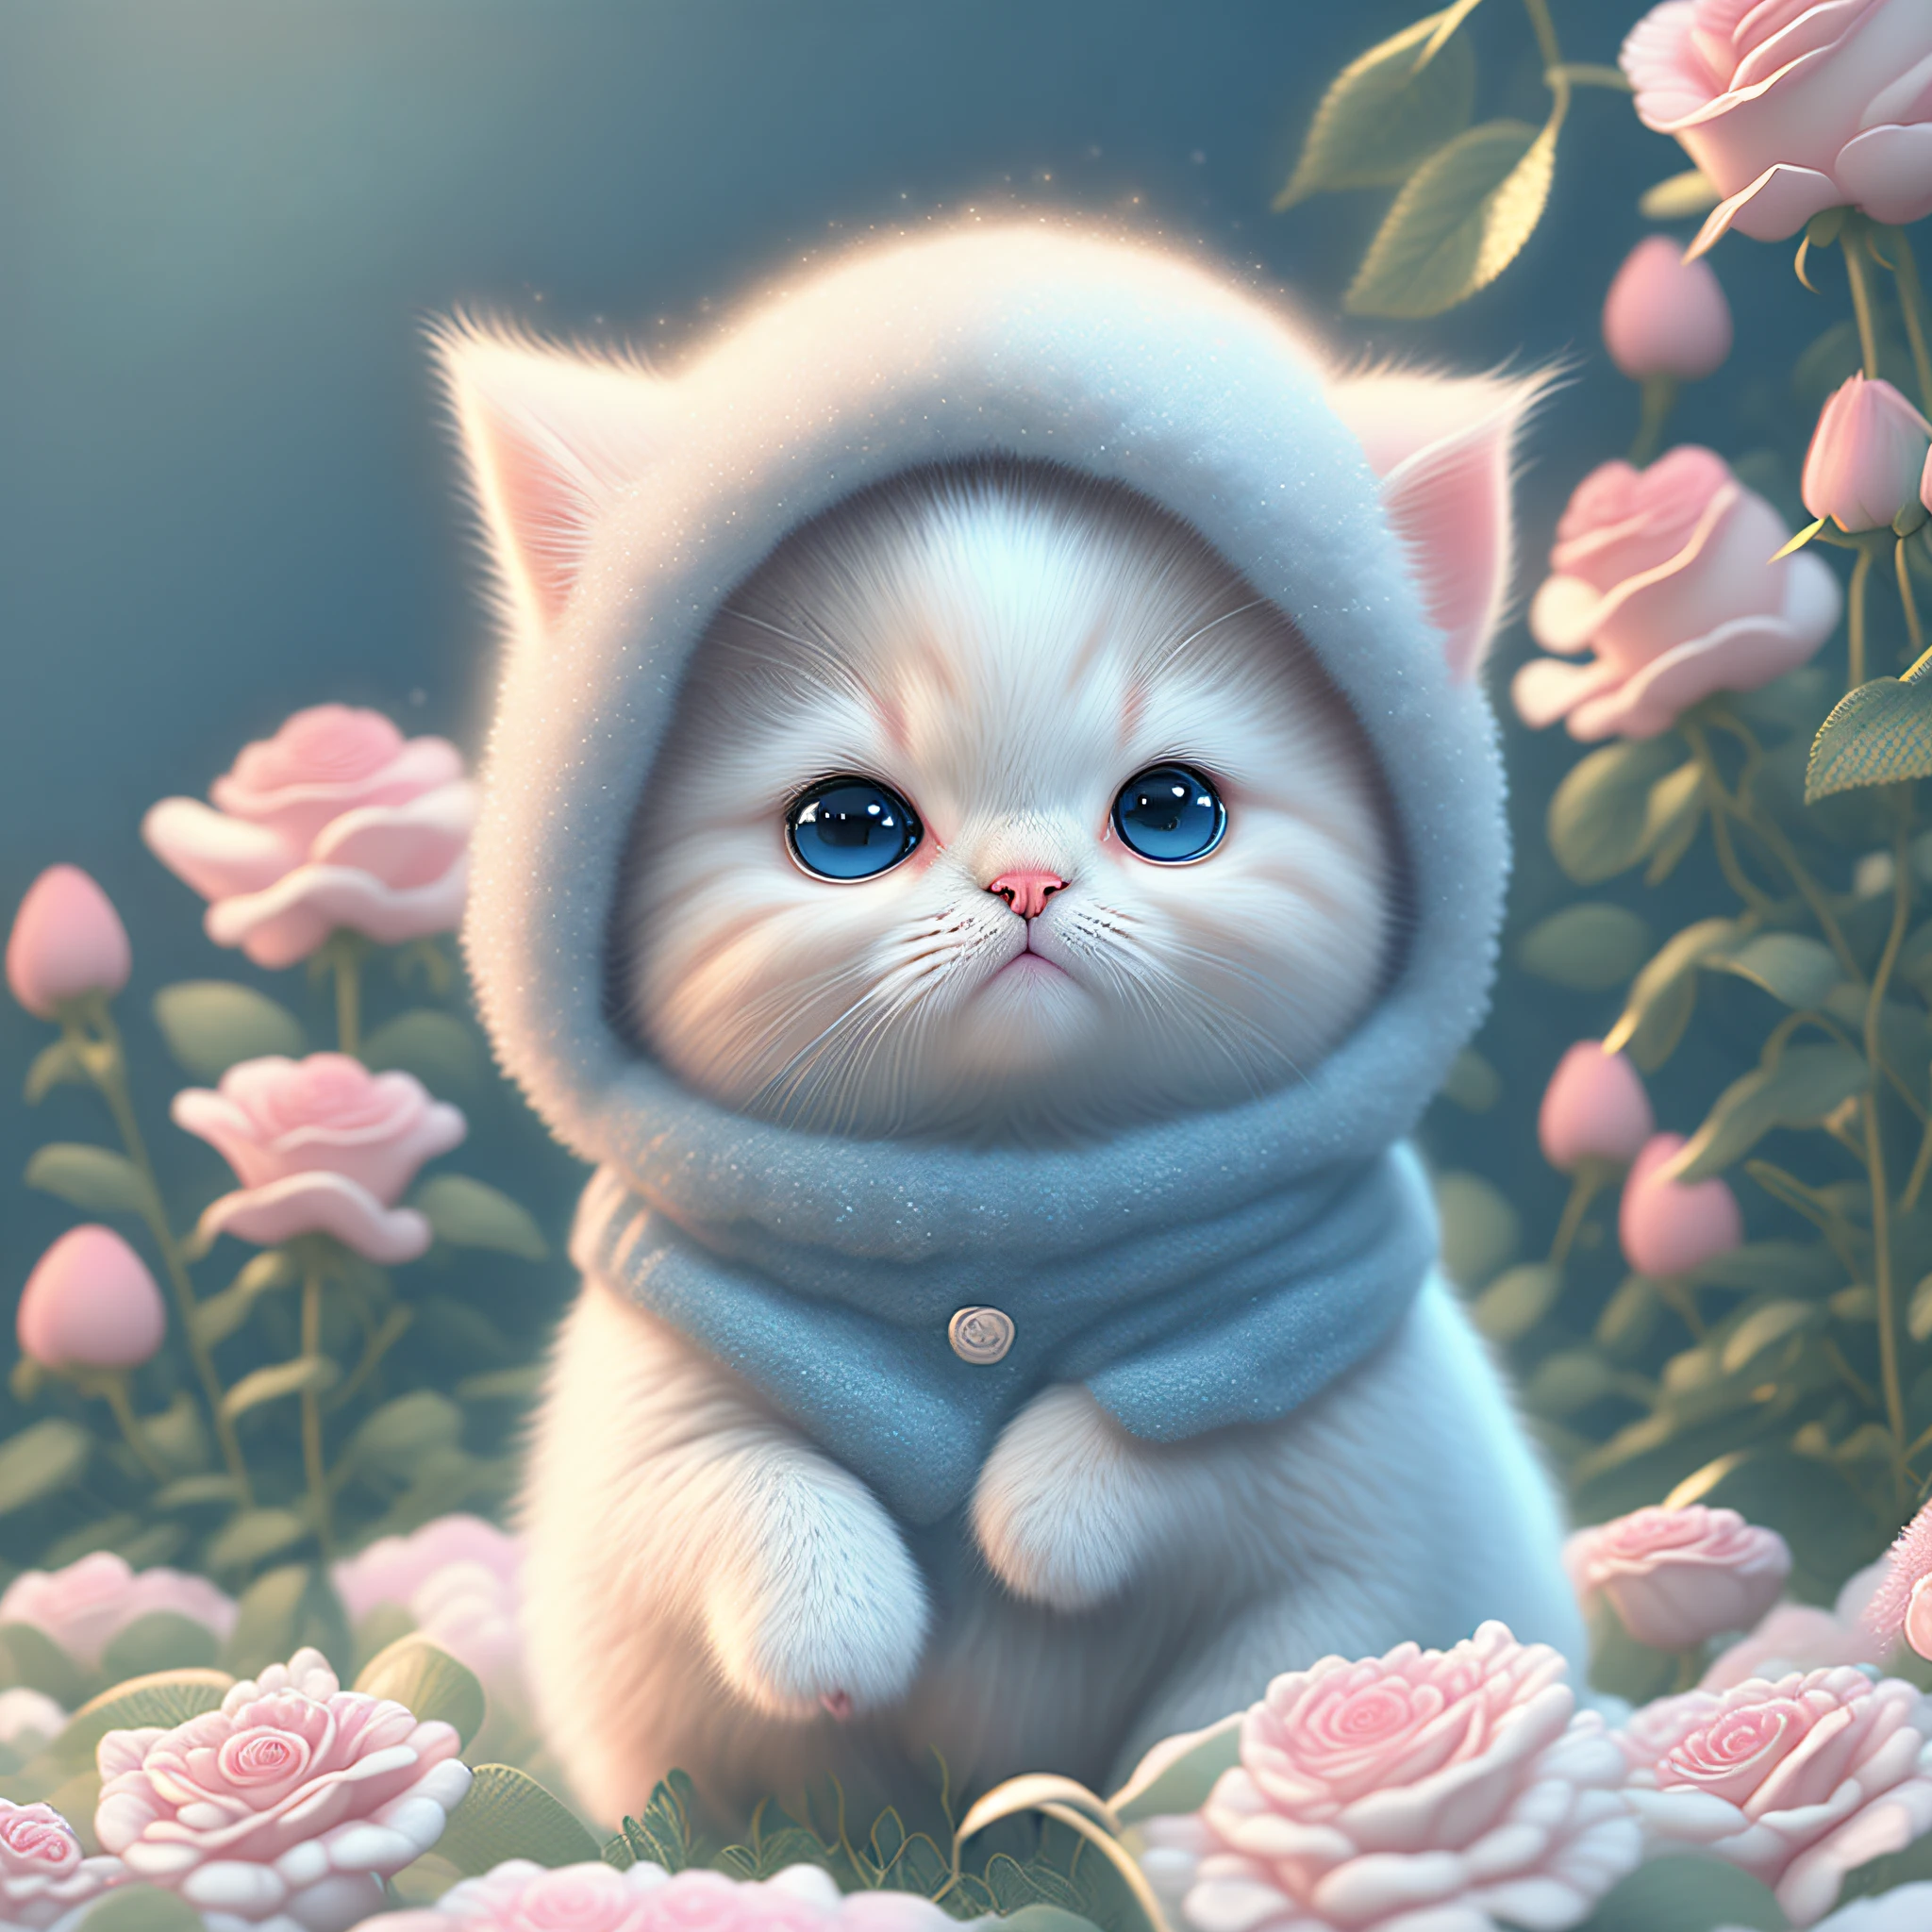 Nesta arte CG ultra-detalhada, o adorável gatinho cercado por rosas etéreas, melhor qualidade, alta resolução, Detalhes intrincados, fantasia, animais fofos